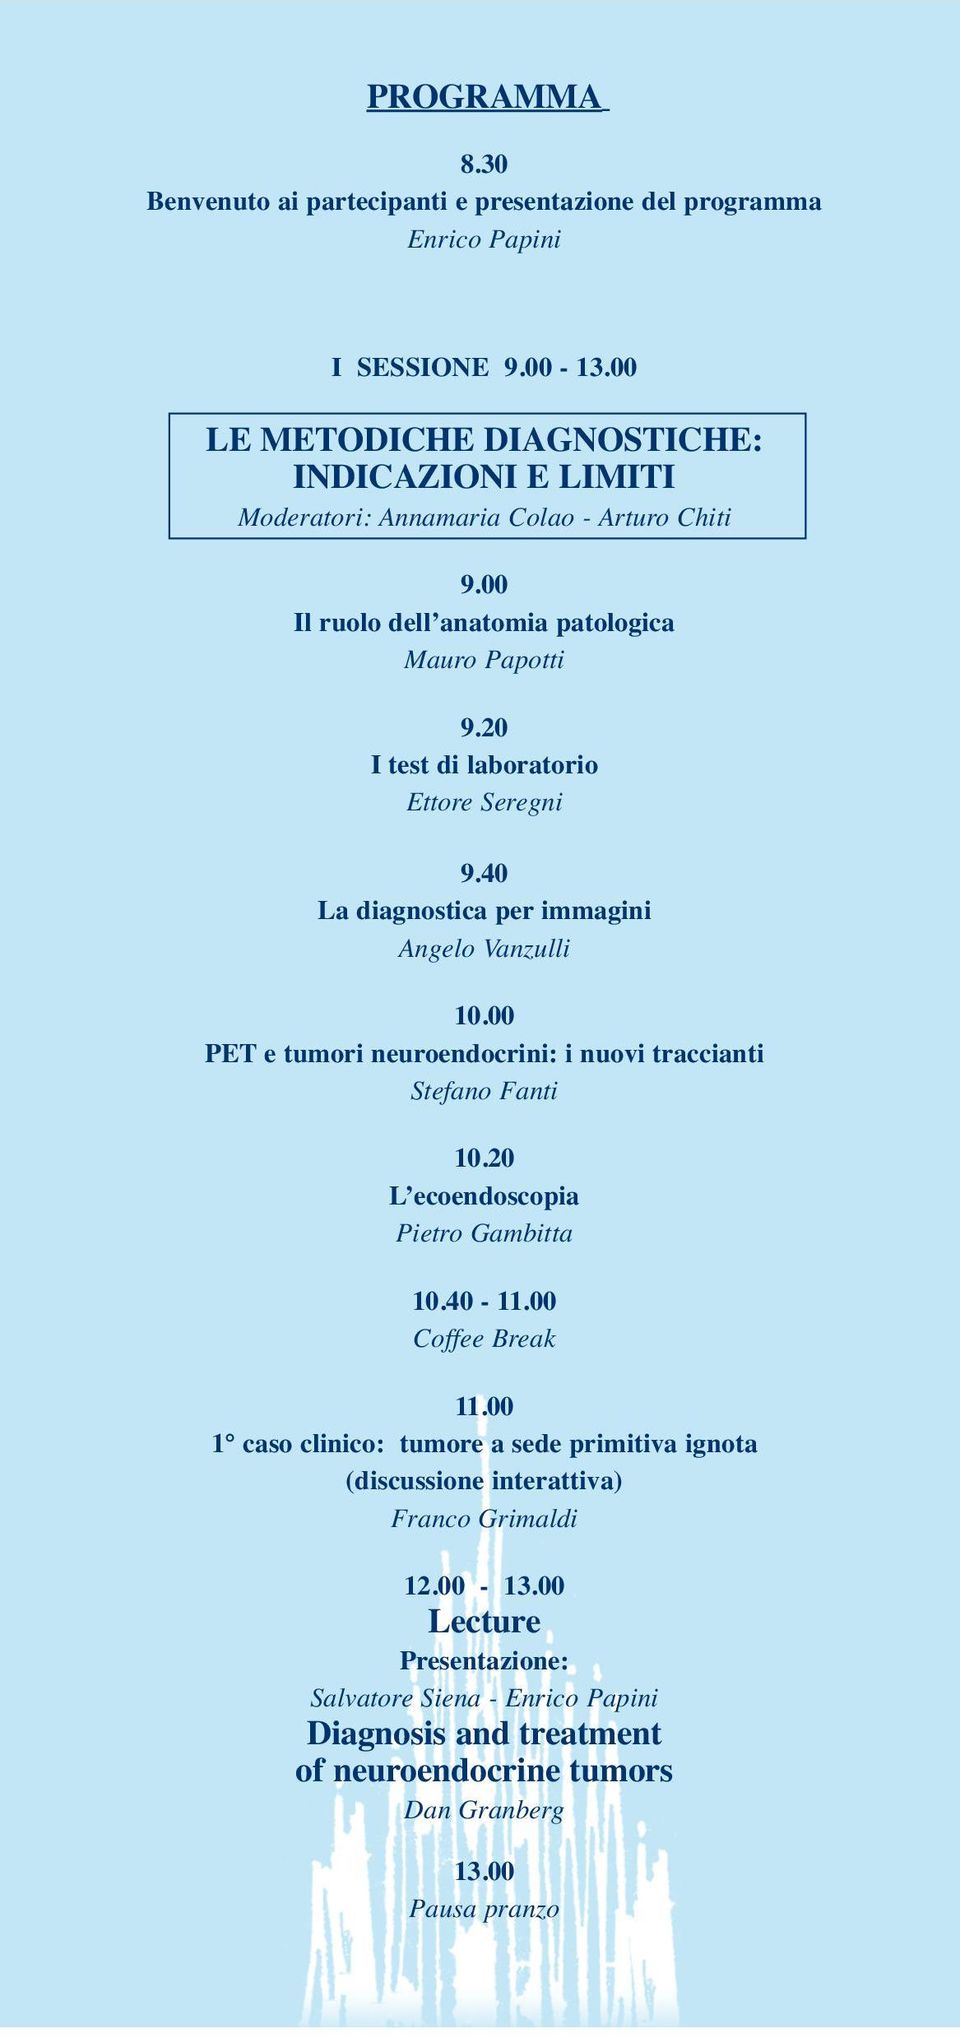 20 I test di laboratorio Ettore Seregni 9.40 La diagnostica per immagini Angelo Vanzulli 10.00 PET e tumori neuroendocrini: i nuovi traccianti Stefano Fanti 10.